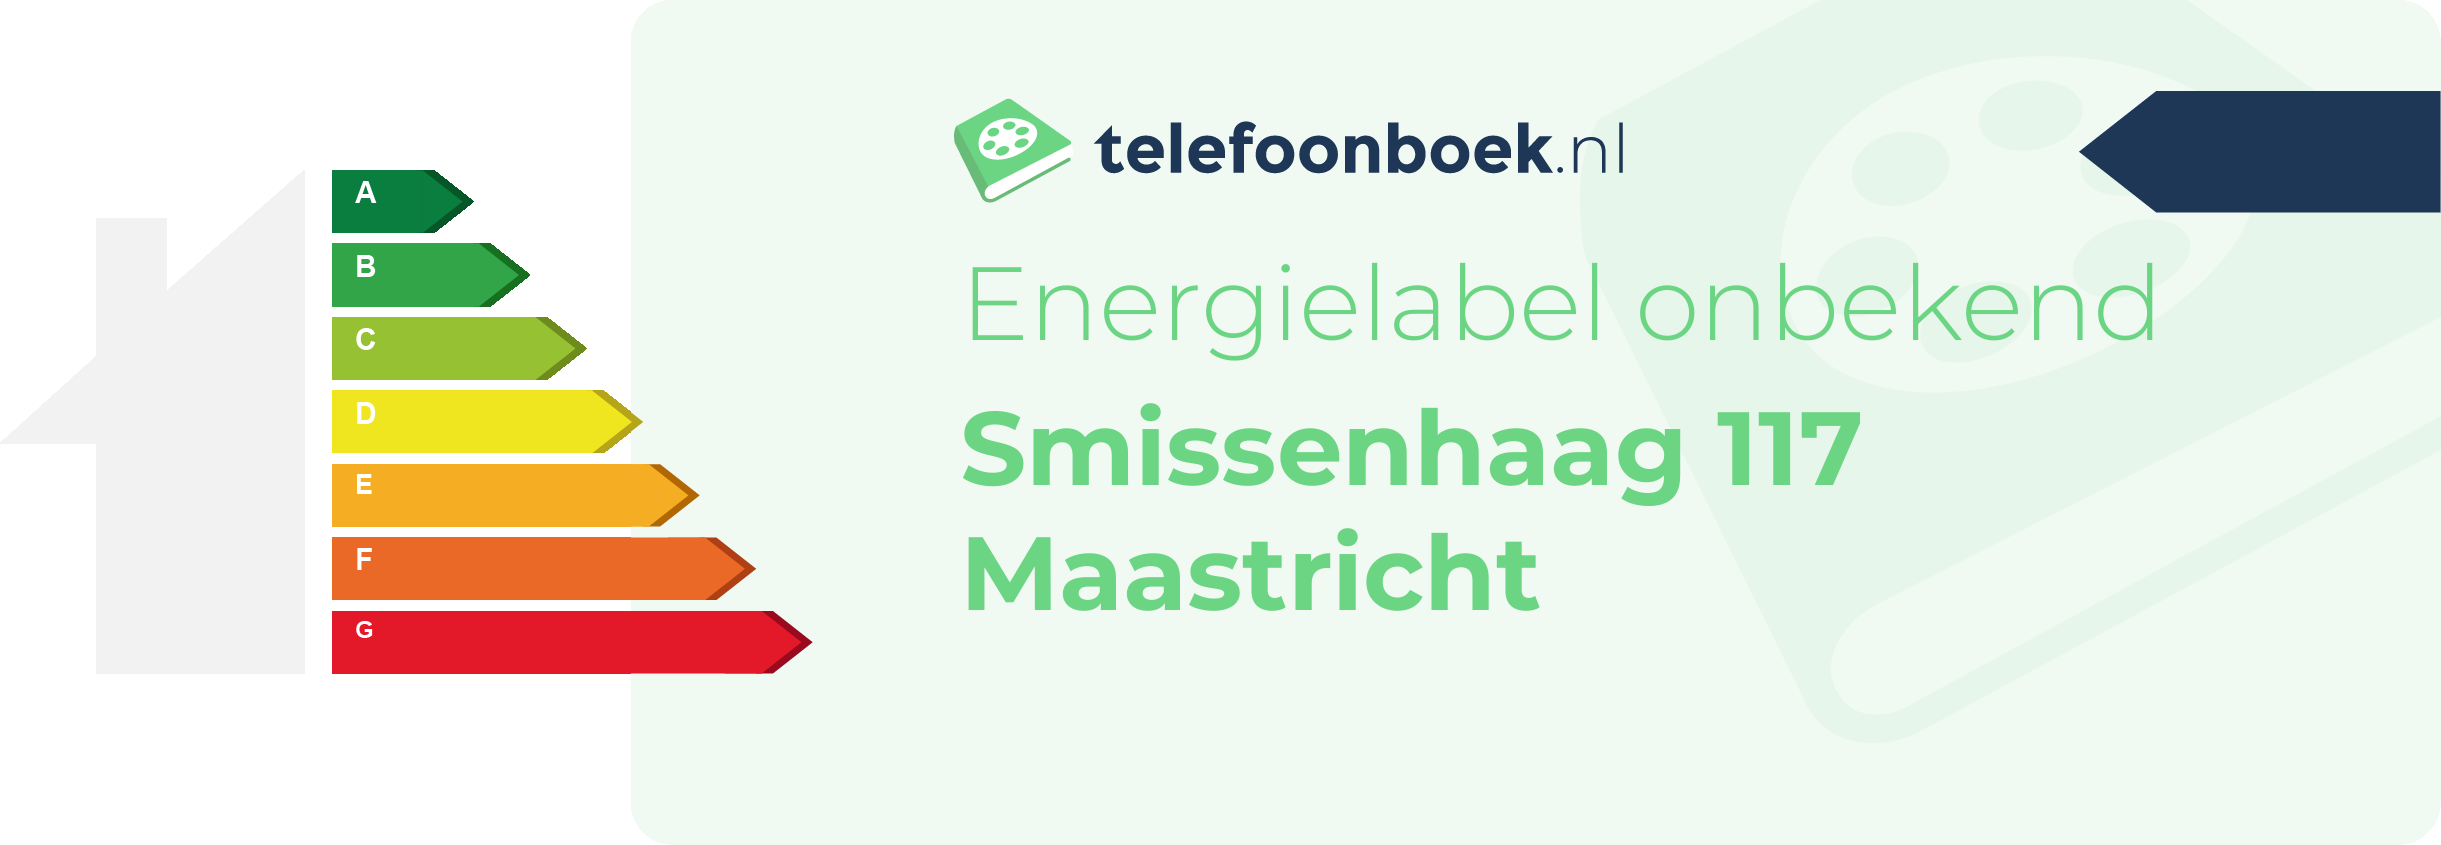 Energielabel Smissenhaag 117 Maastricht